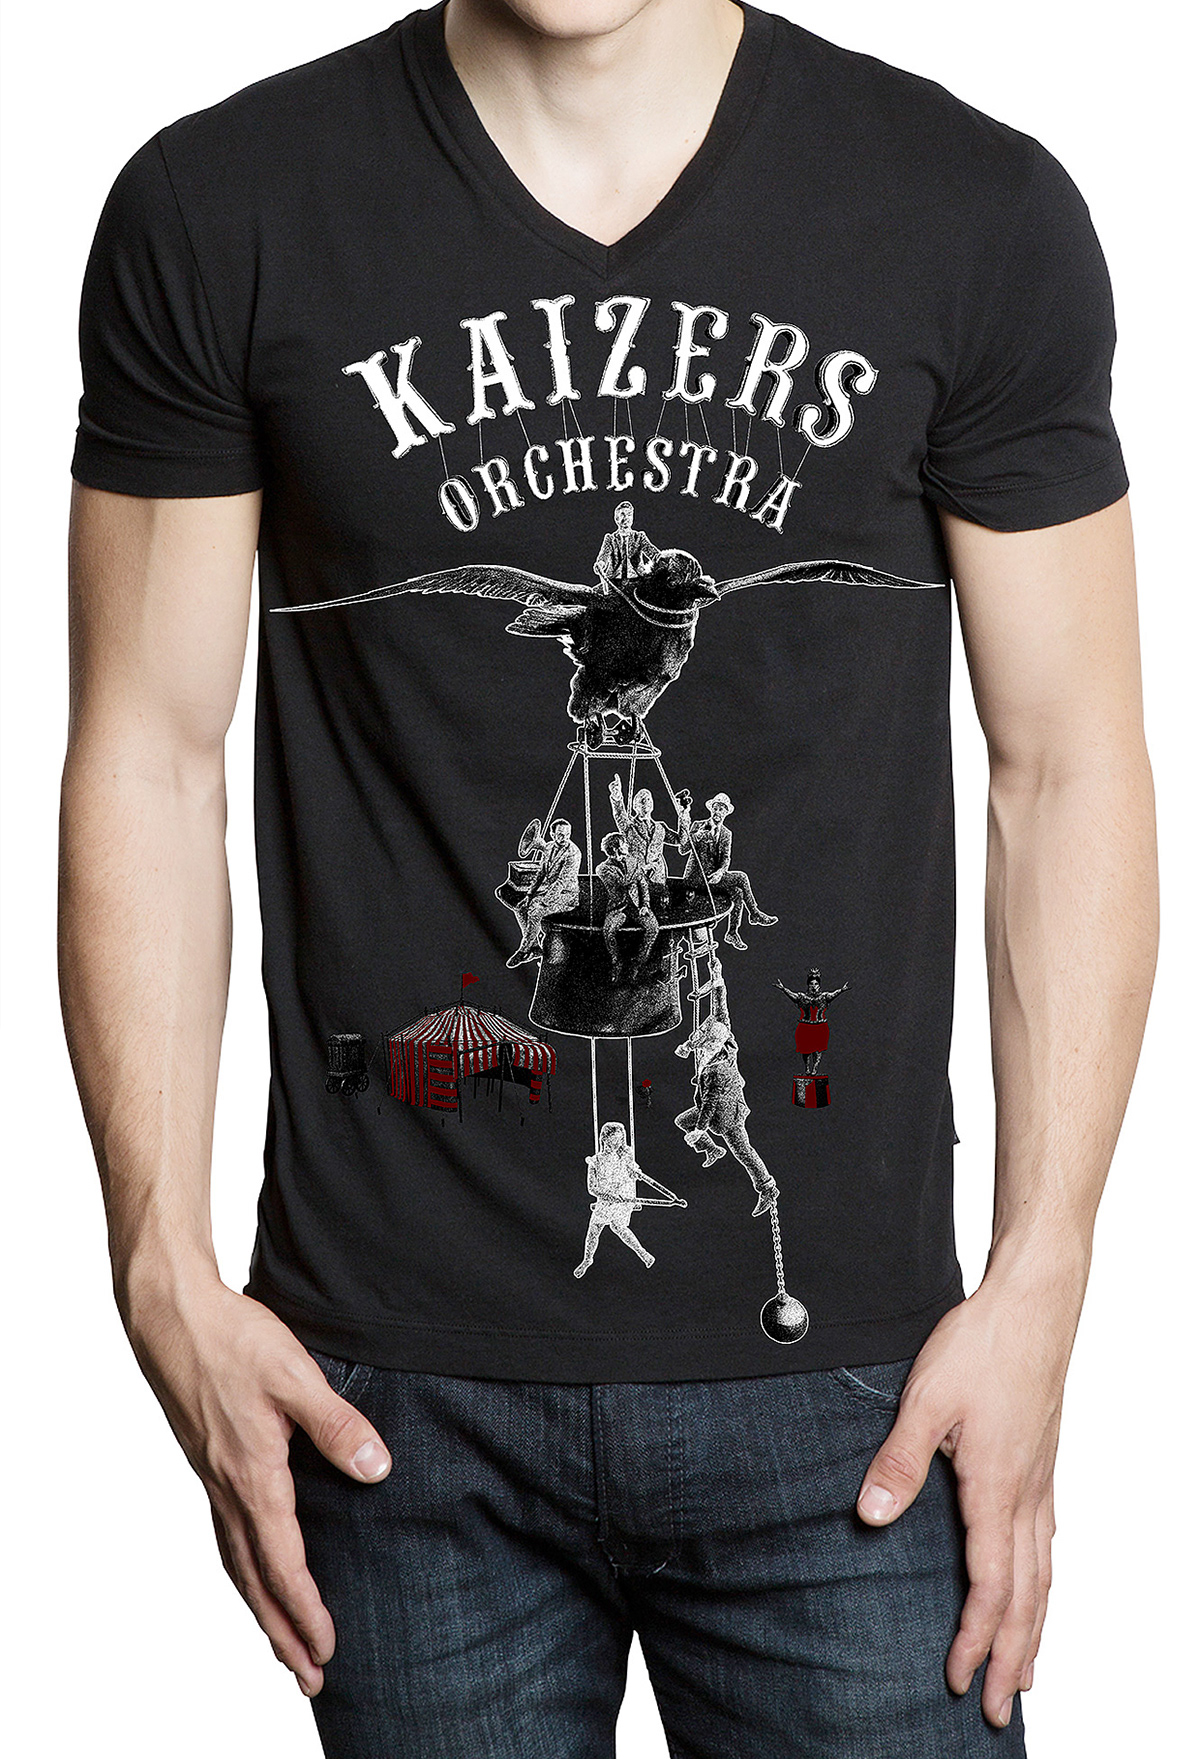 Kaizers Kaizers Orchestra Myreze Siste Dans Björn Myreze poster tshirts